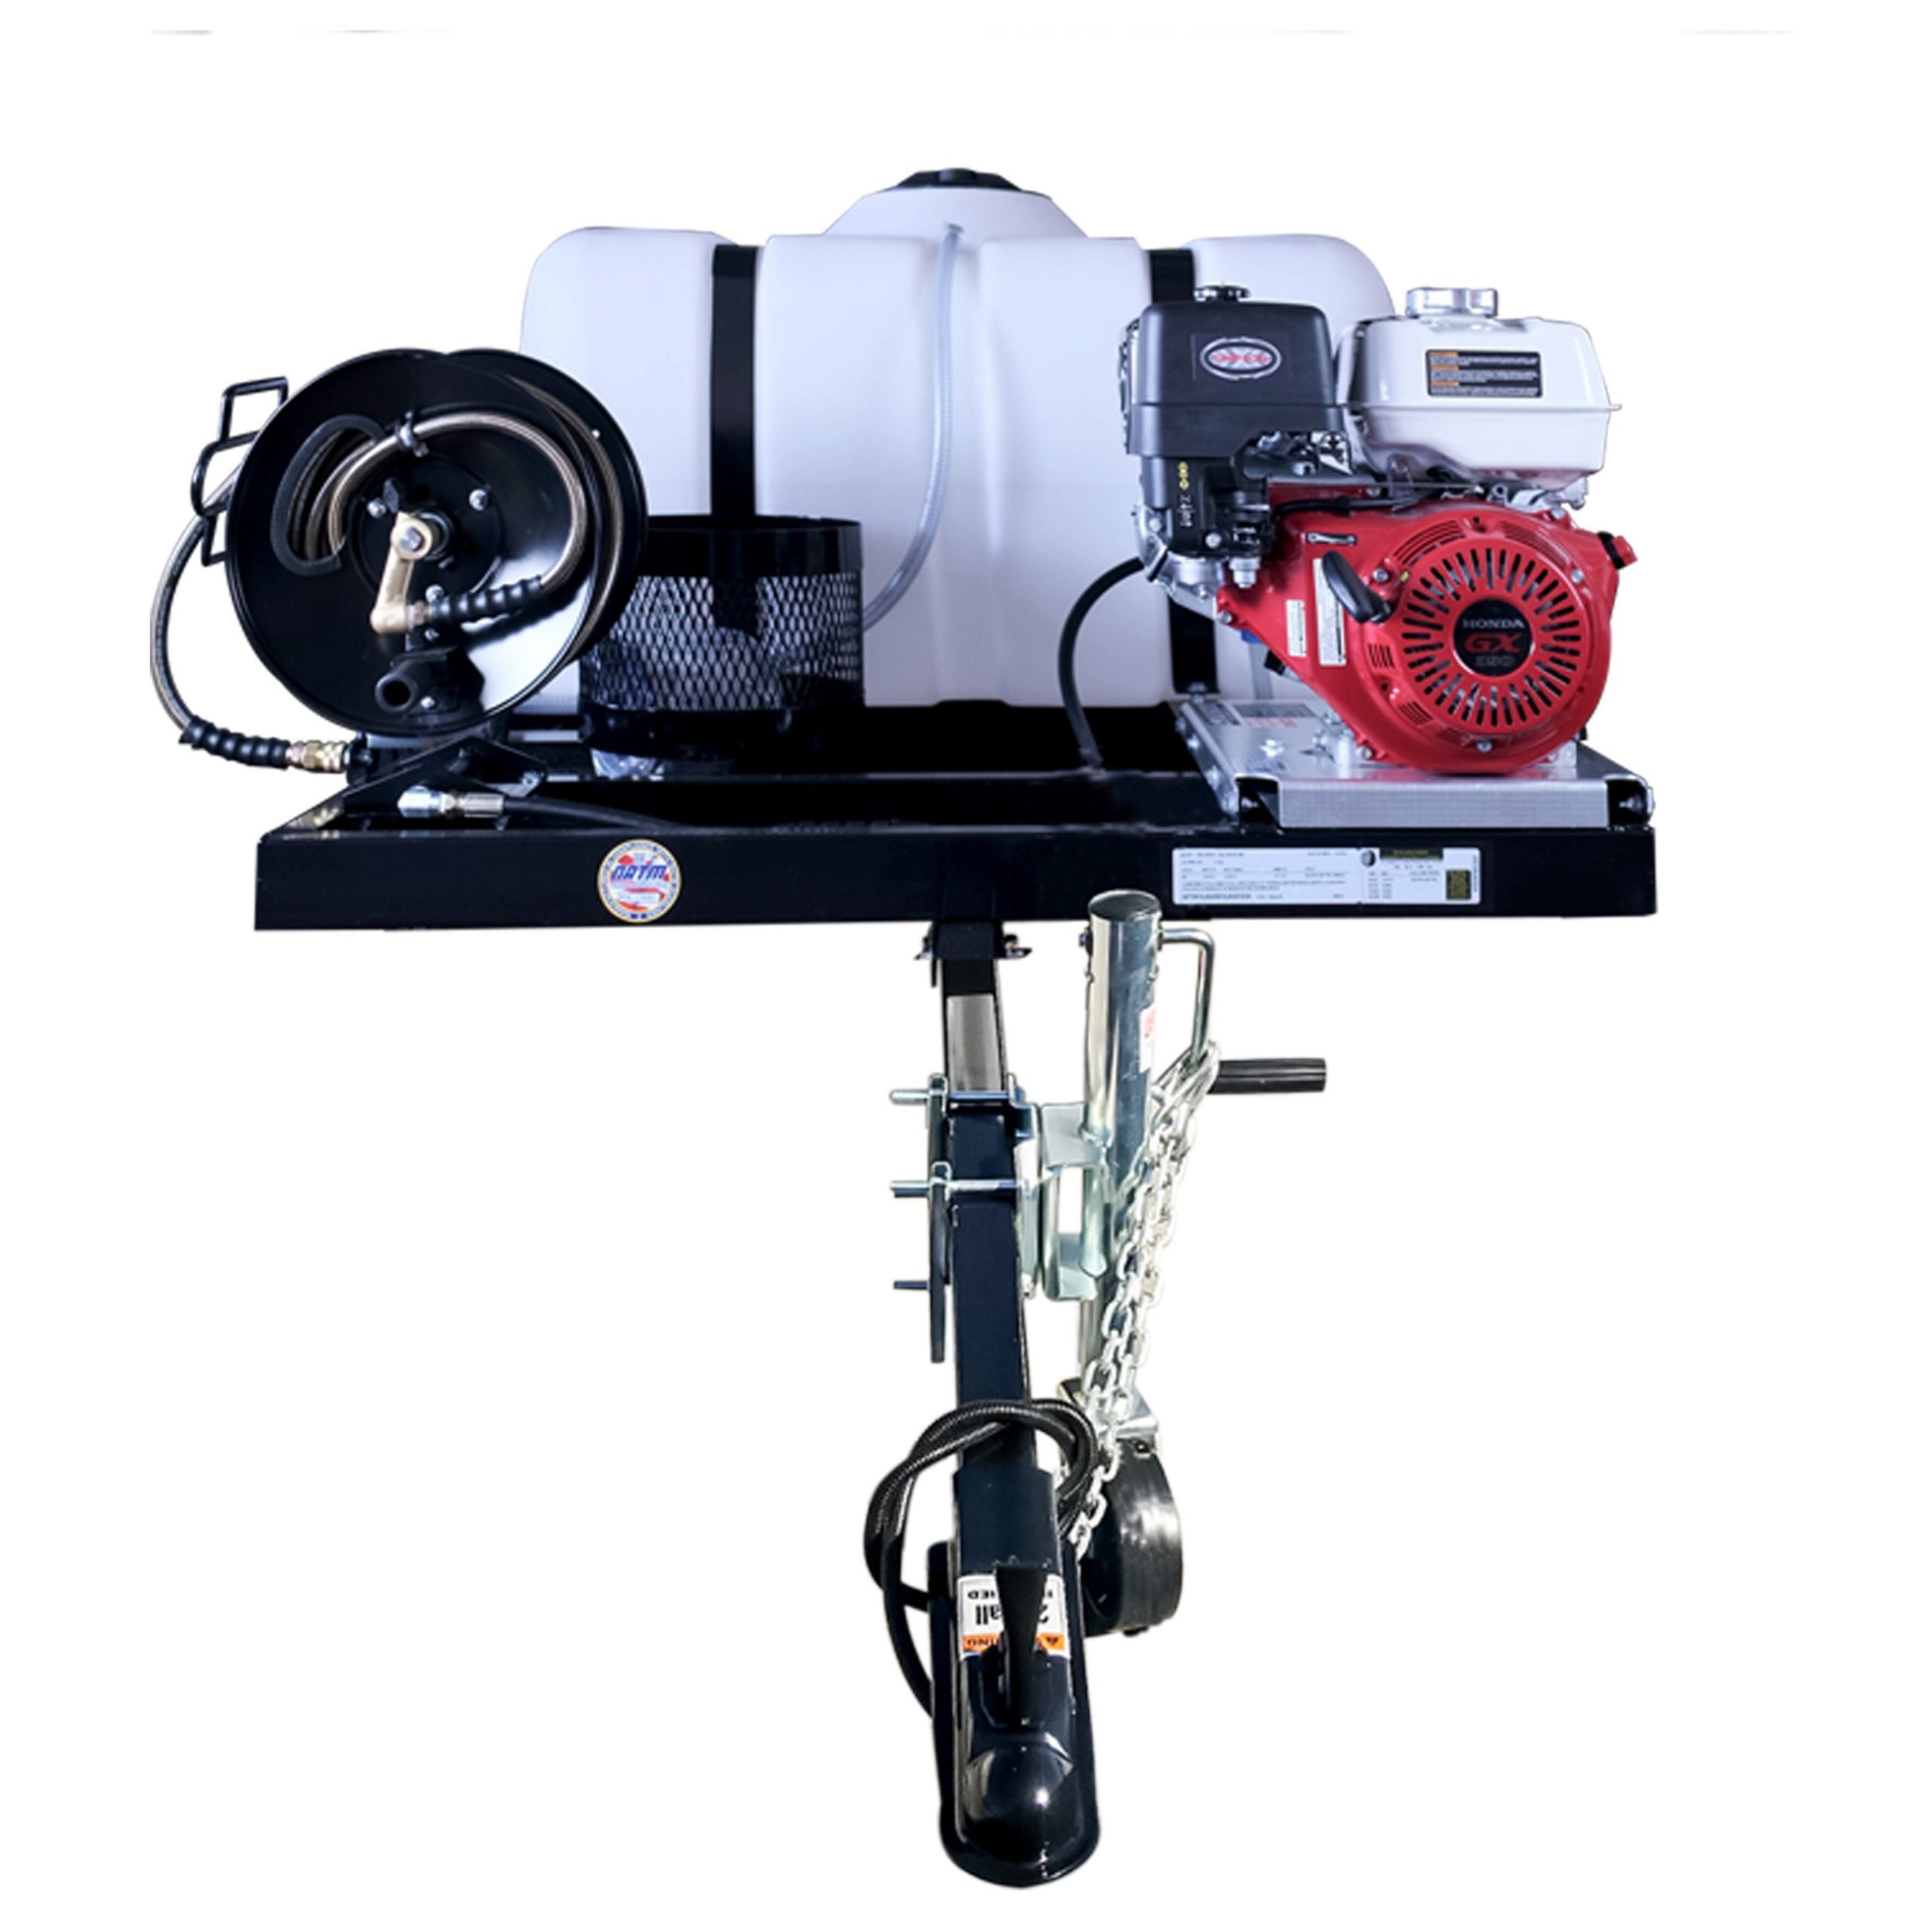 4200 PSI @ 4 GPM Direct Drive Honda GX390 Gas Pressure Washer Trailer w/ Cat Pump